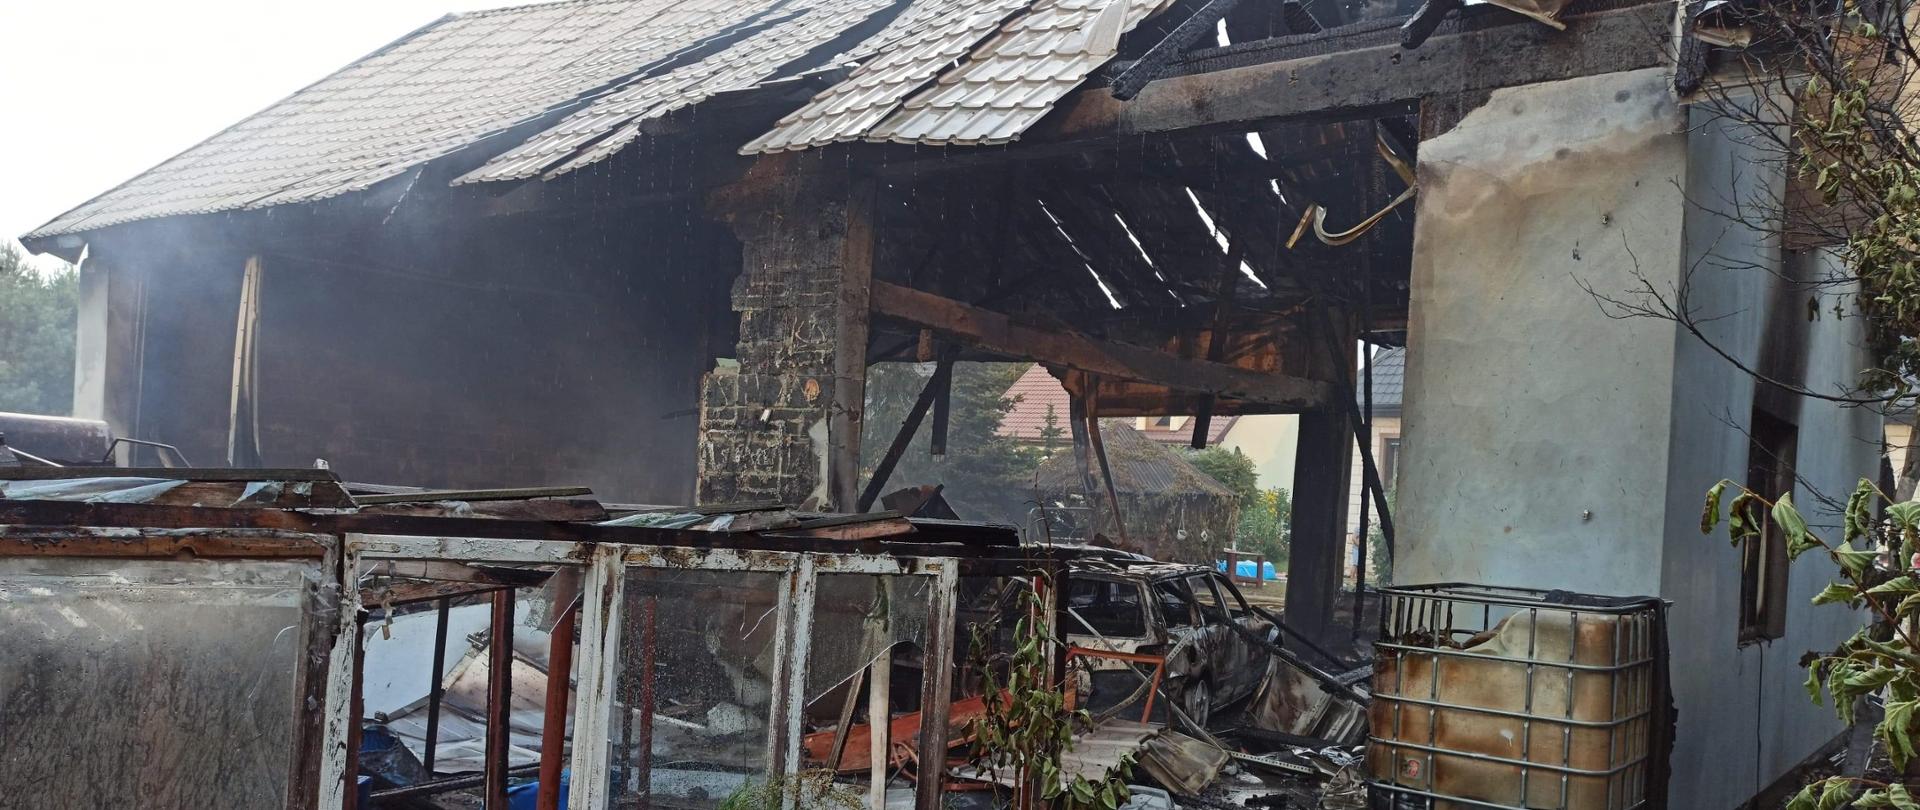 Wybuch gazu w budynku gospodarczym w miejscowości Pradła